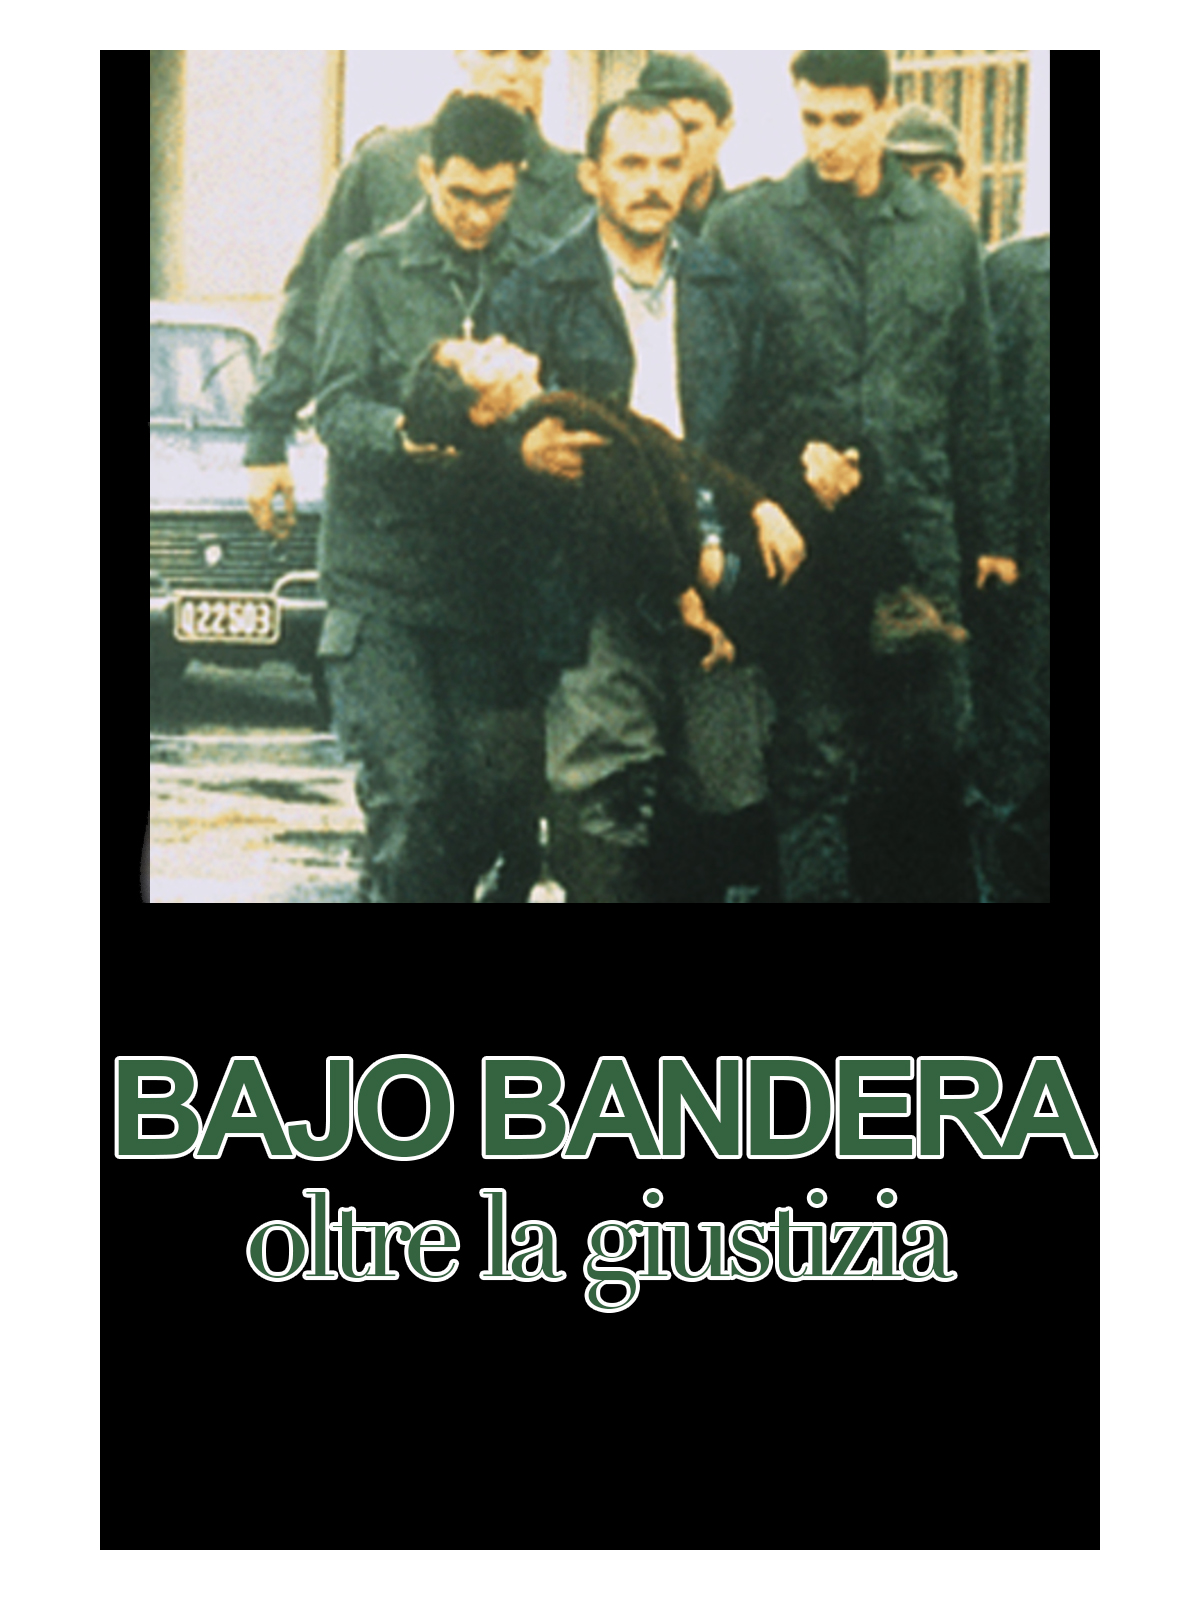 Bajo bandera – Over the justice